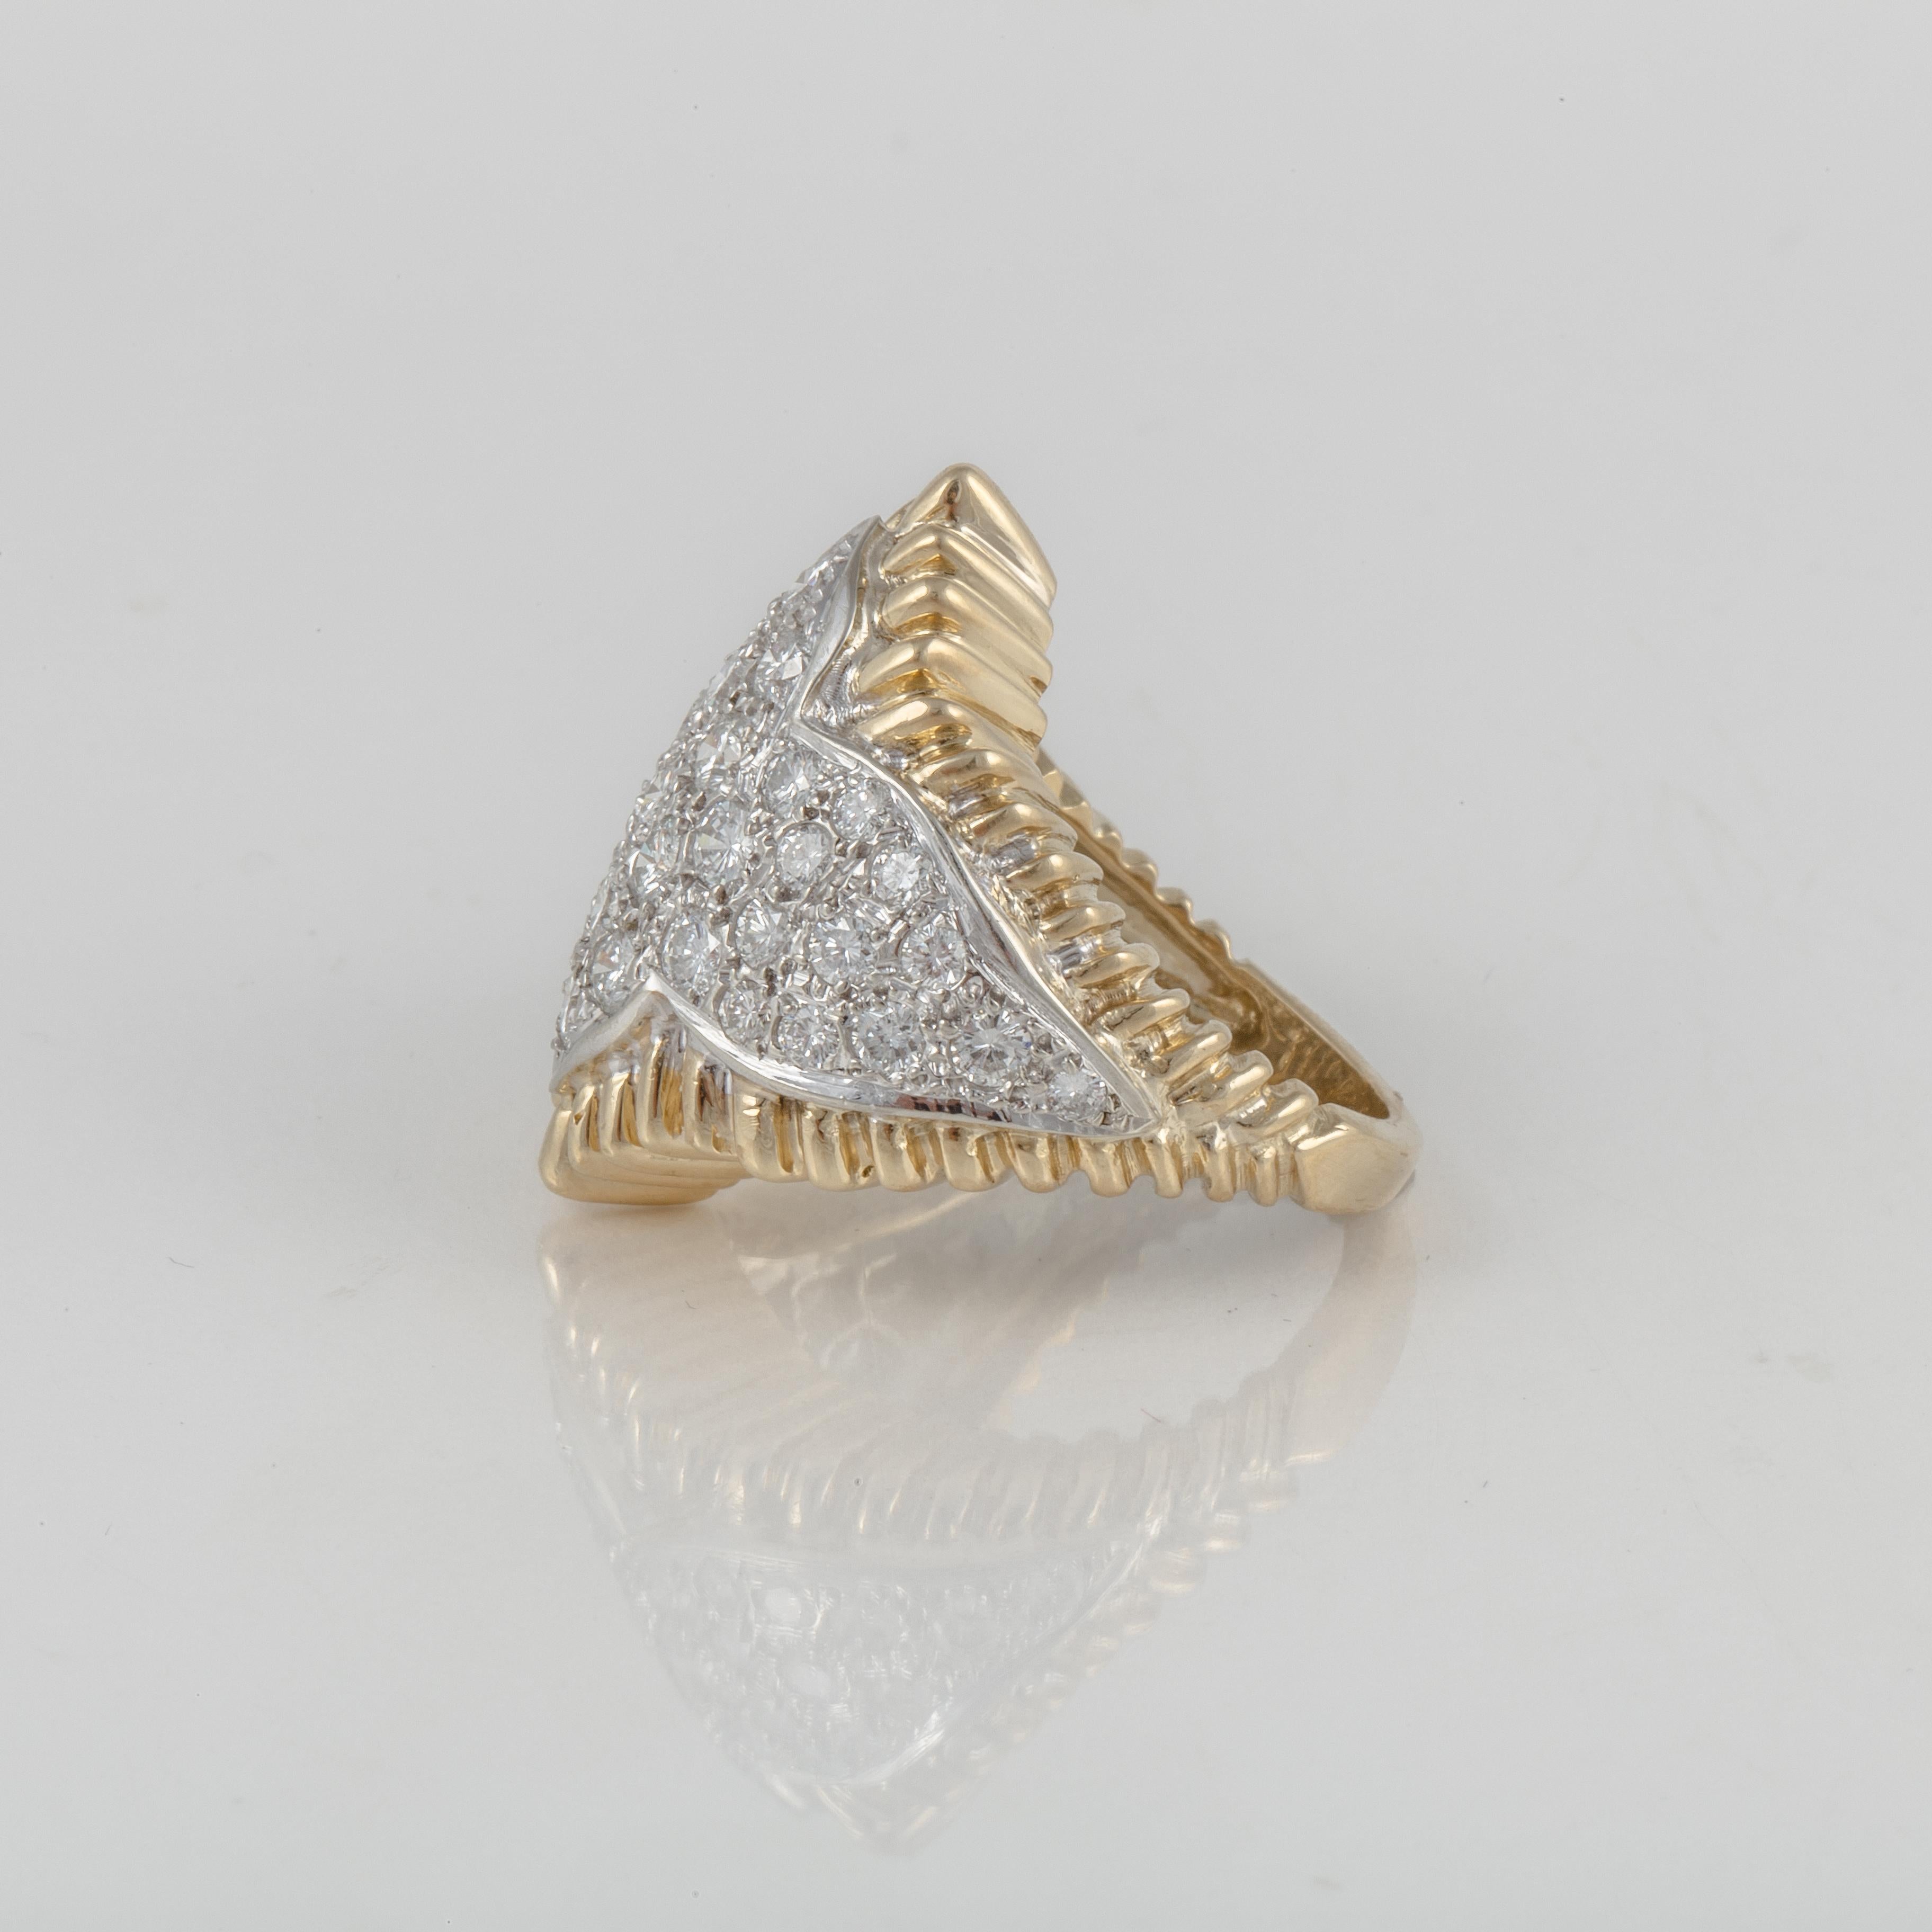 1970er-Ring aus 18 Karat Gelbgold mit runden Pavé-Diamanten in Platin.  Es gibt 41 runde Diamanten von insgesamt 3,75 Karat, Farbe H-I und Reinheit VS-SI.  Der Ring hat die Größe 7,  mit einer Präsentationsfläche von 7/8 Zoll mal 1 1/8 Zoll.